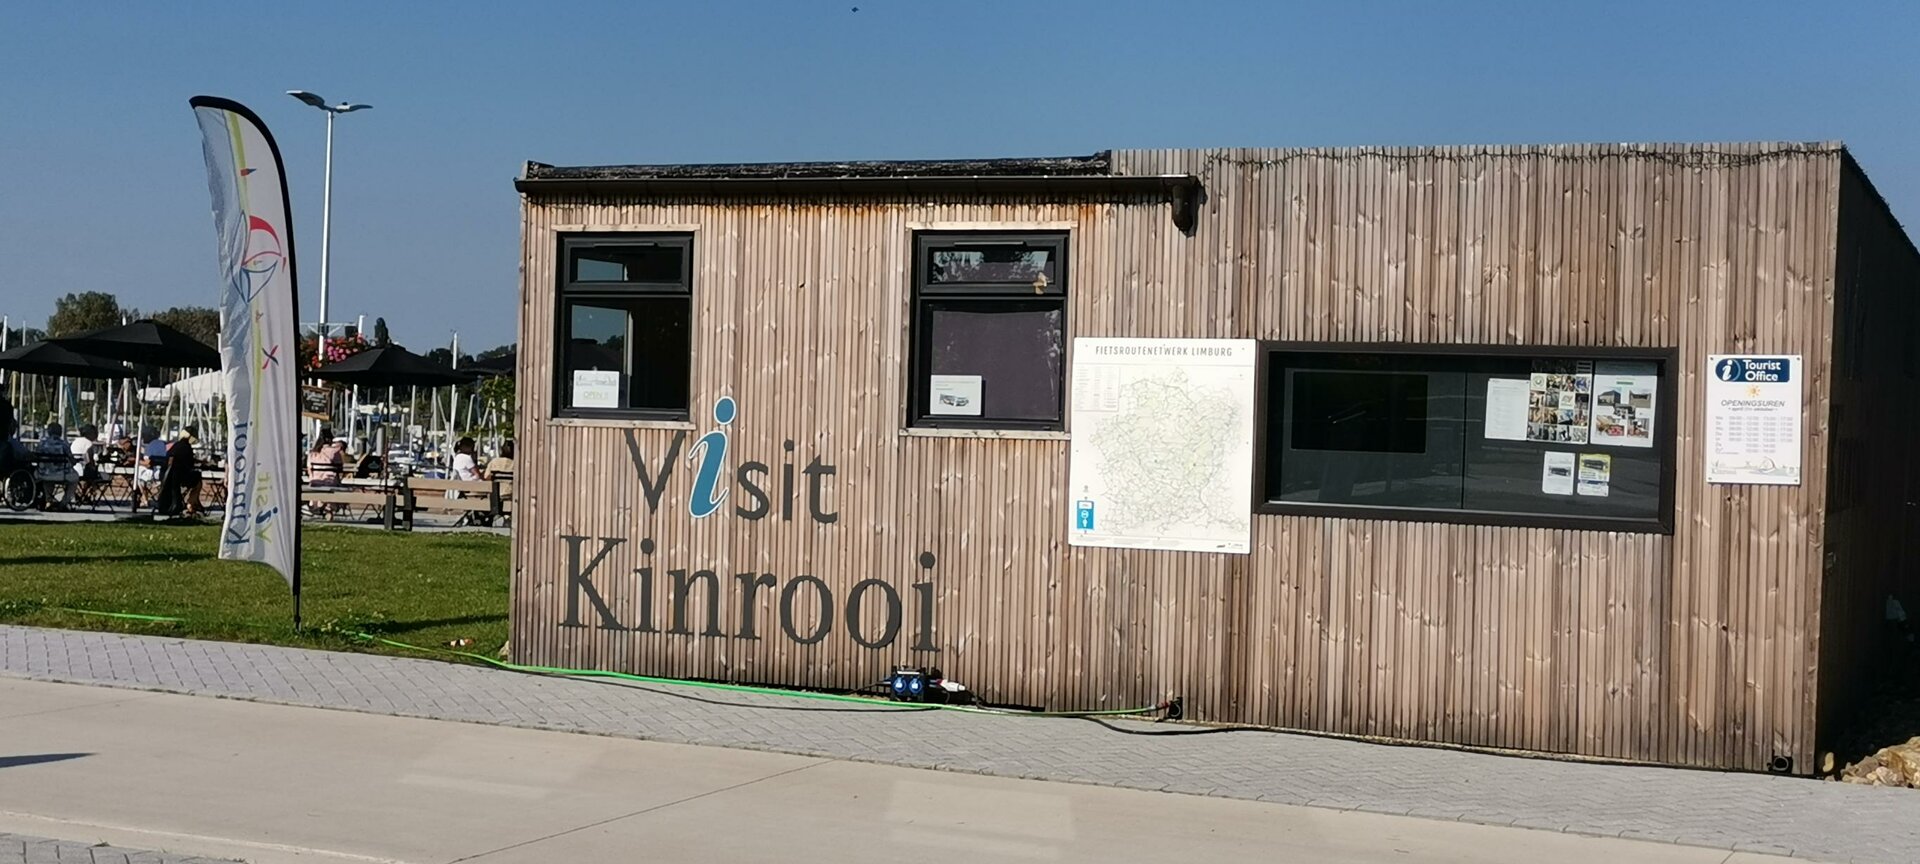 Visit Kinrooi - Kantoor Visit Kinrooi